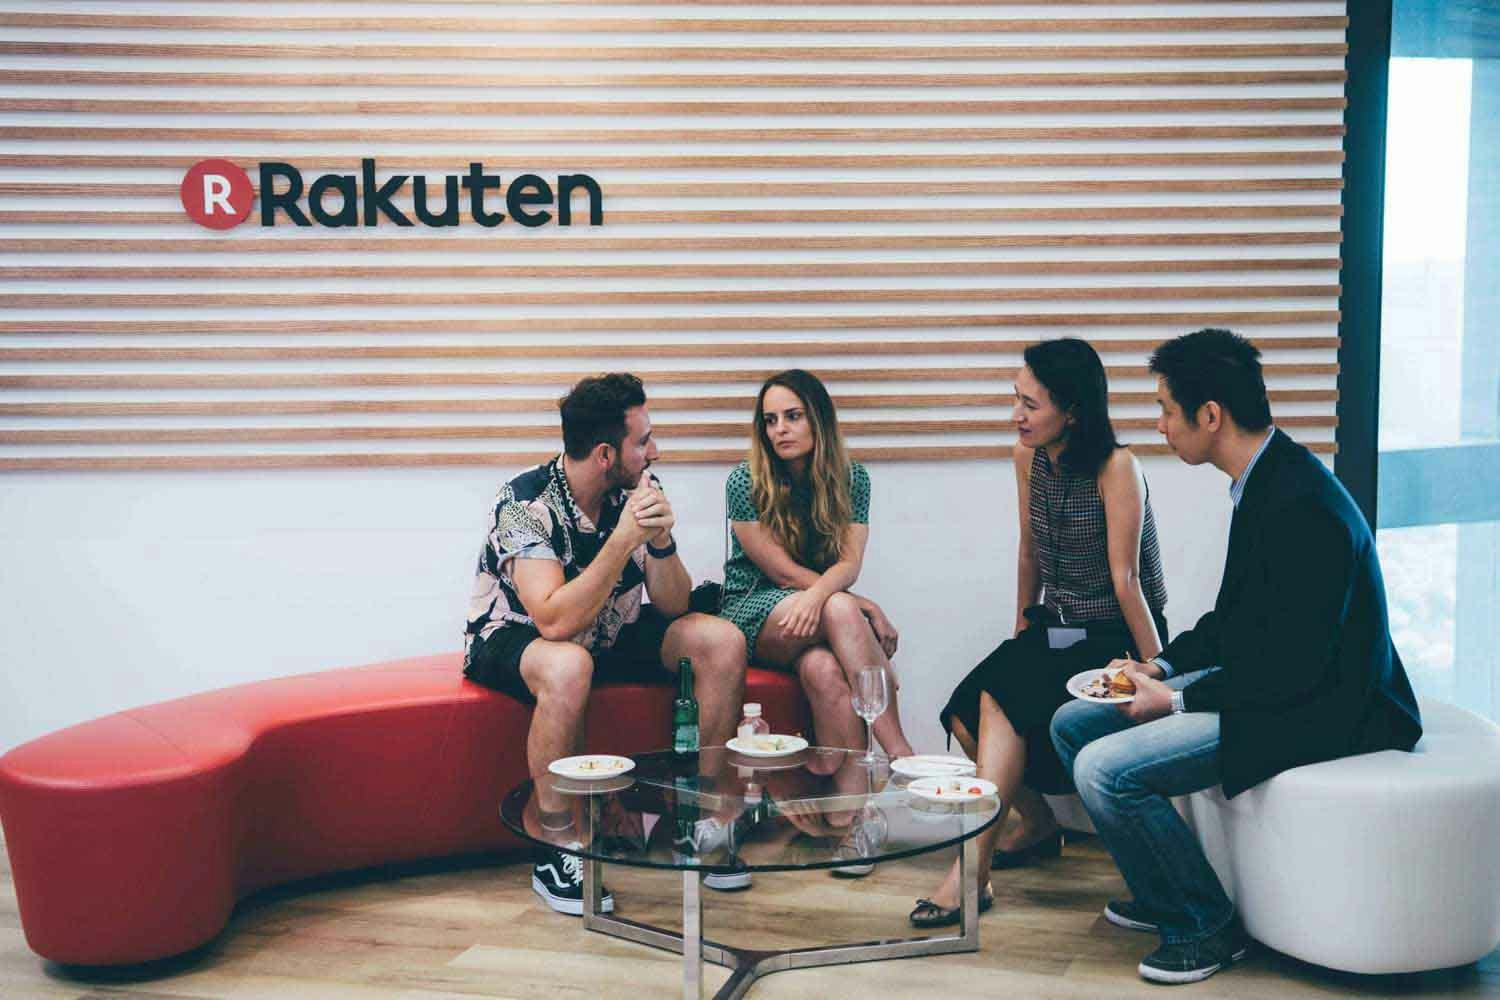 rakuten symposium at rakuten singapore office a group of four sitting under the rakuten logo